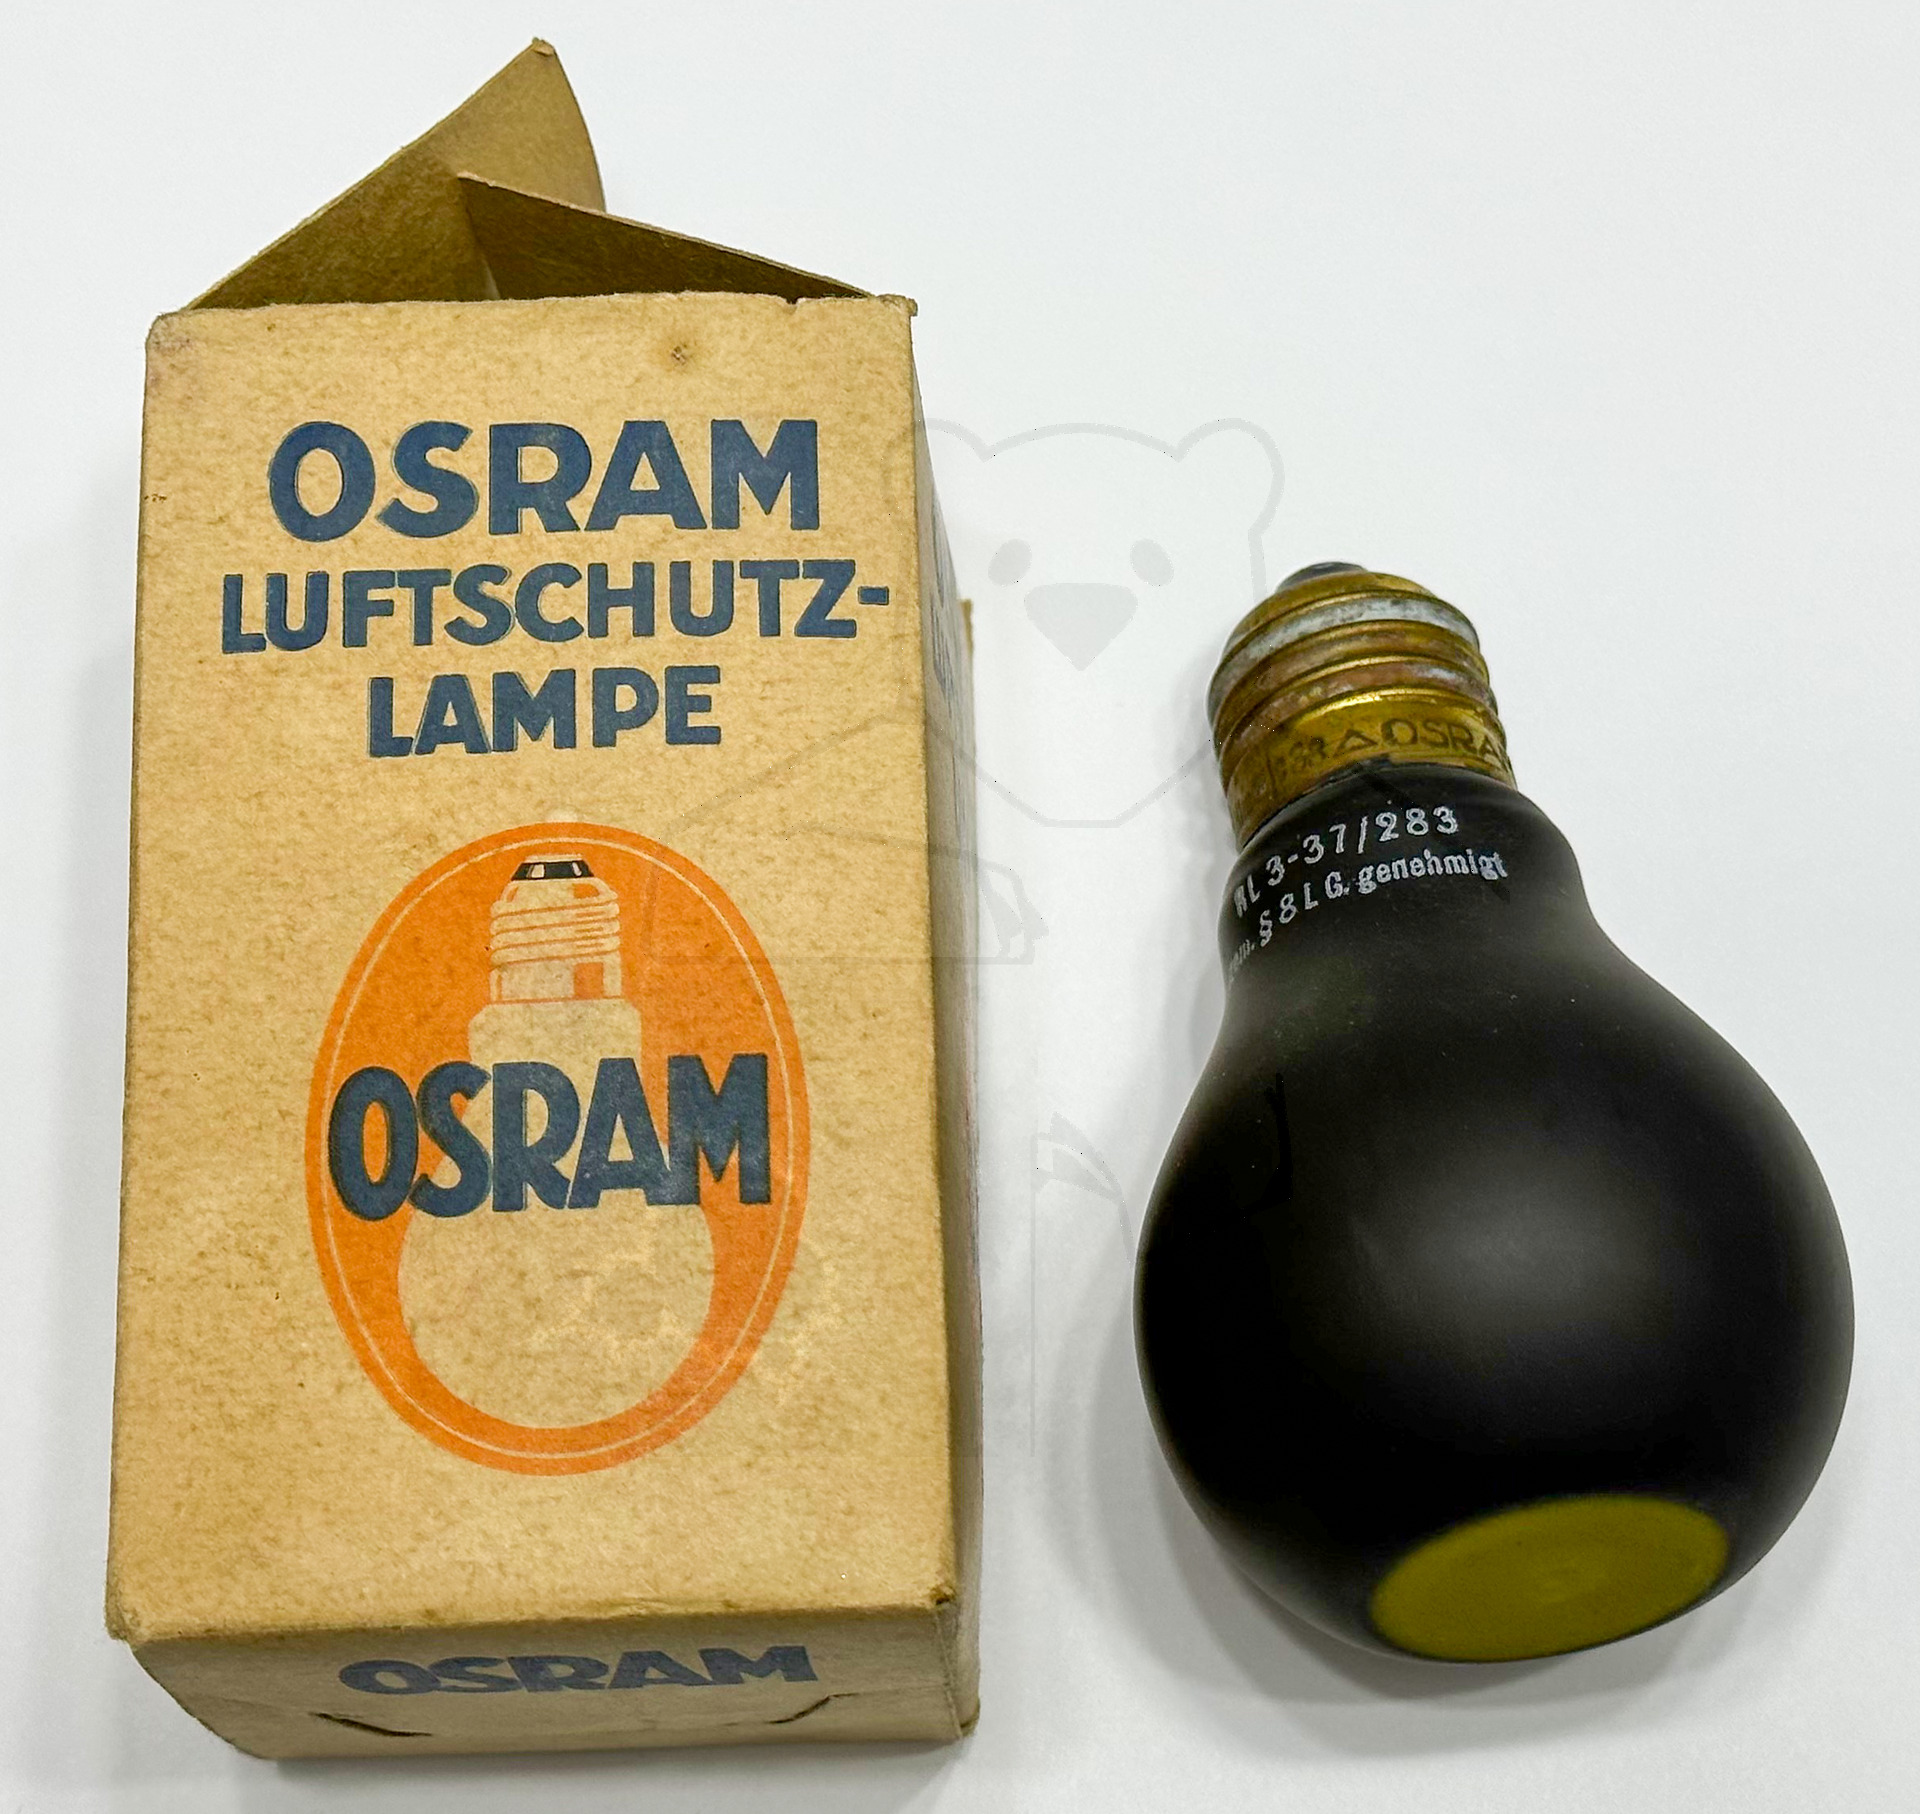 Luftschutzlampe von Osram, ca. 1940 - Verpackung und Lampe